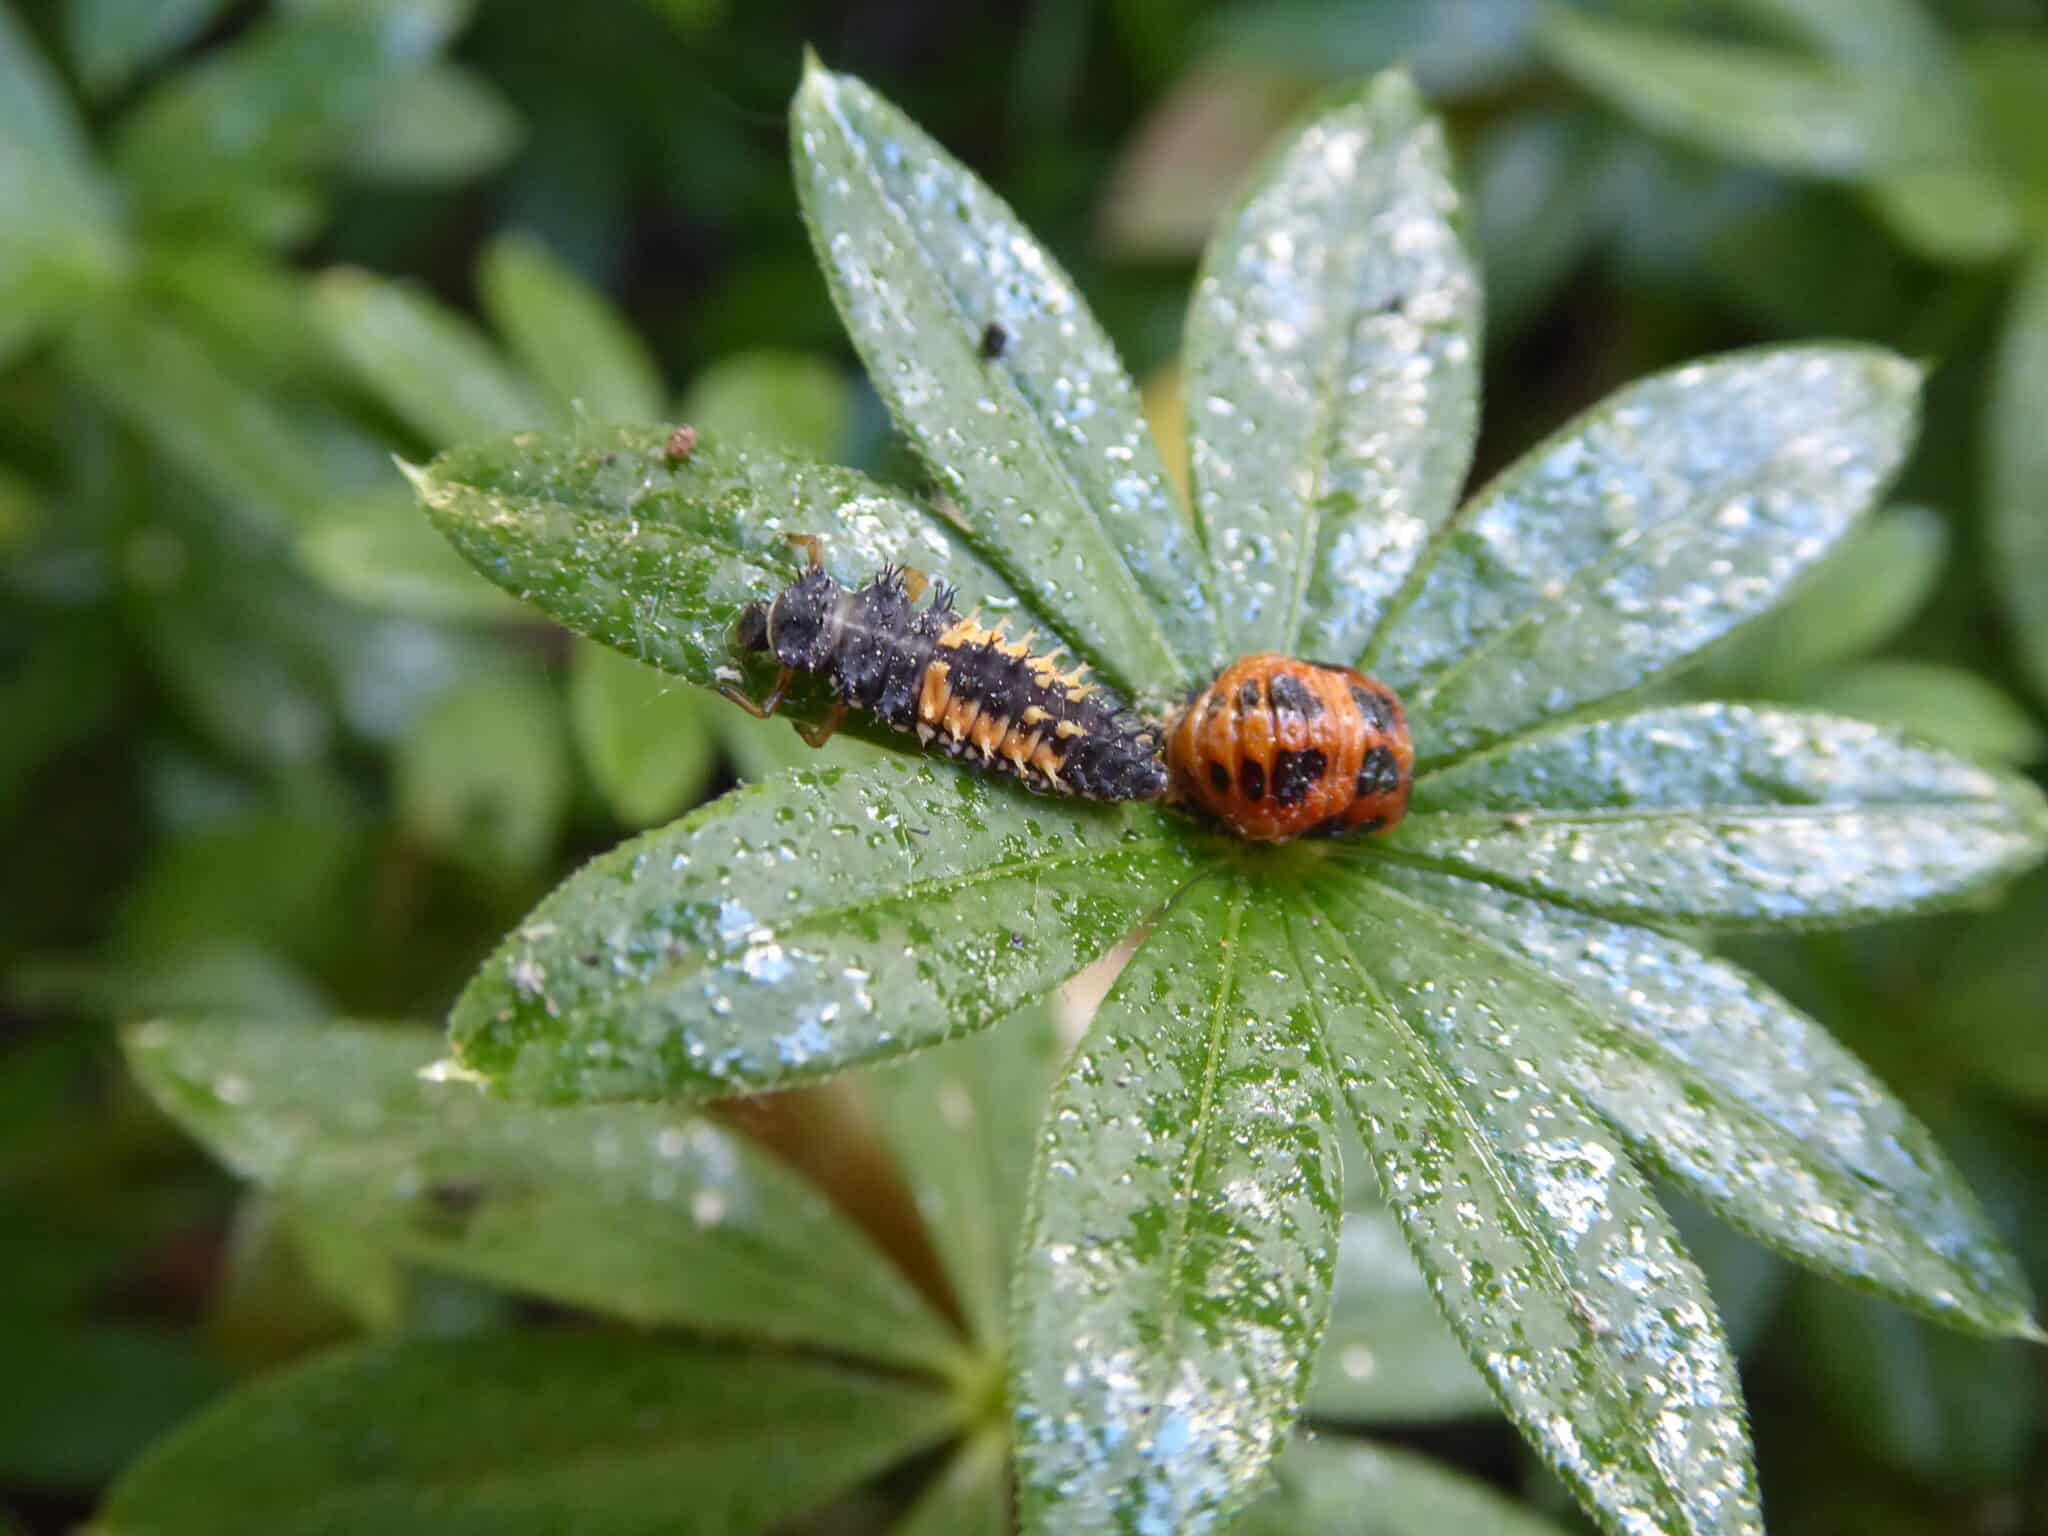 Marienkäfer sind nützlich. So sehen deren Larven (links), Puppen (rechts) aus. Das Klebrige, Glänzende auf dem Foto ist der Honigtau - Ausscheidungen der Blattläuse.